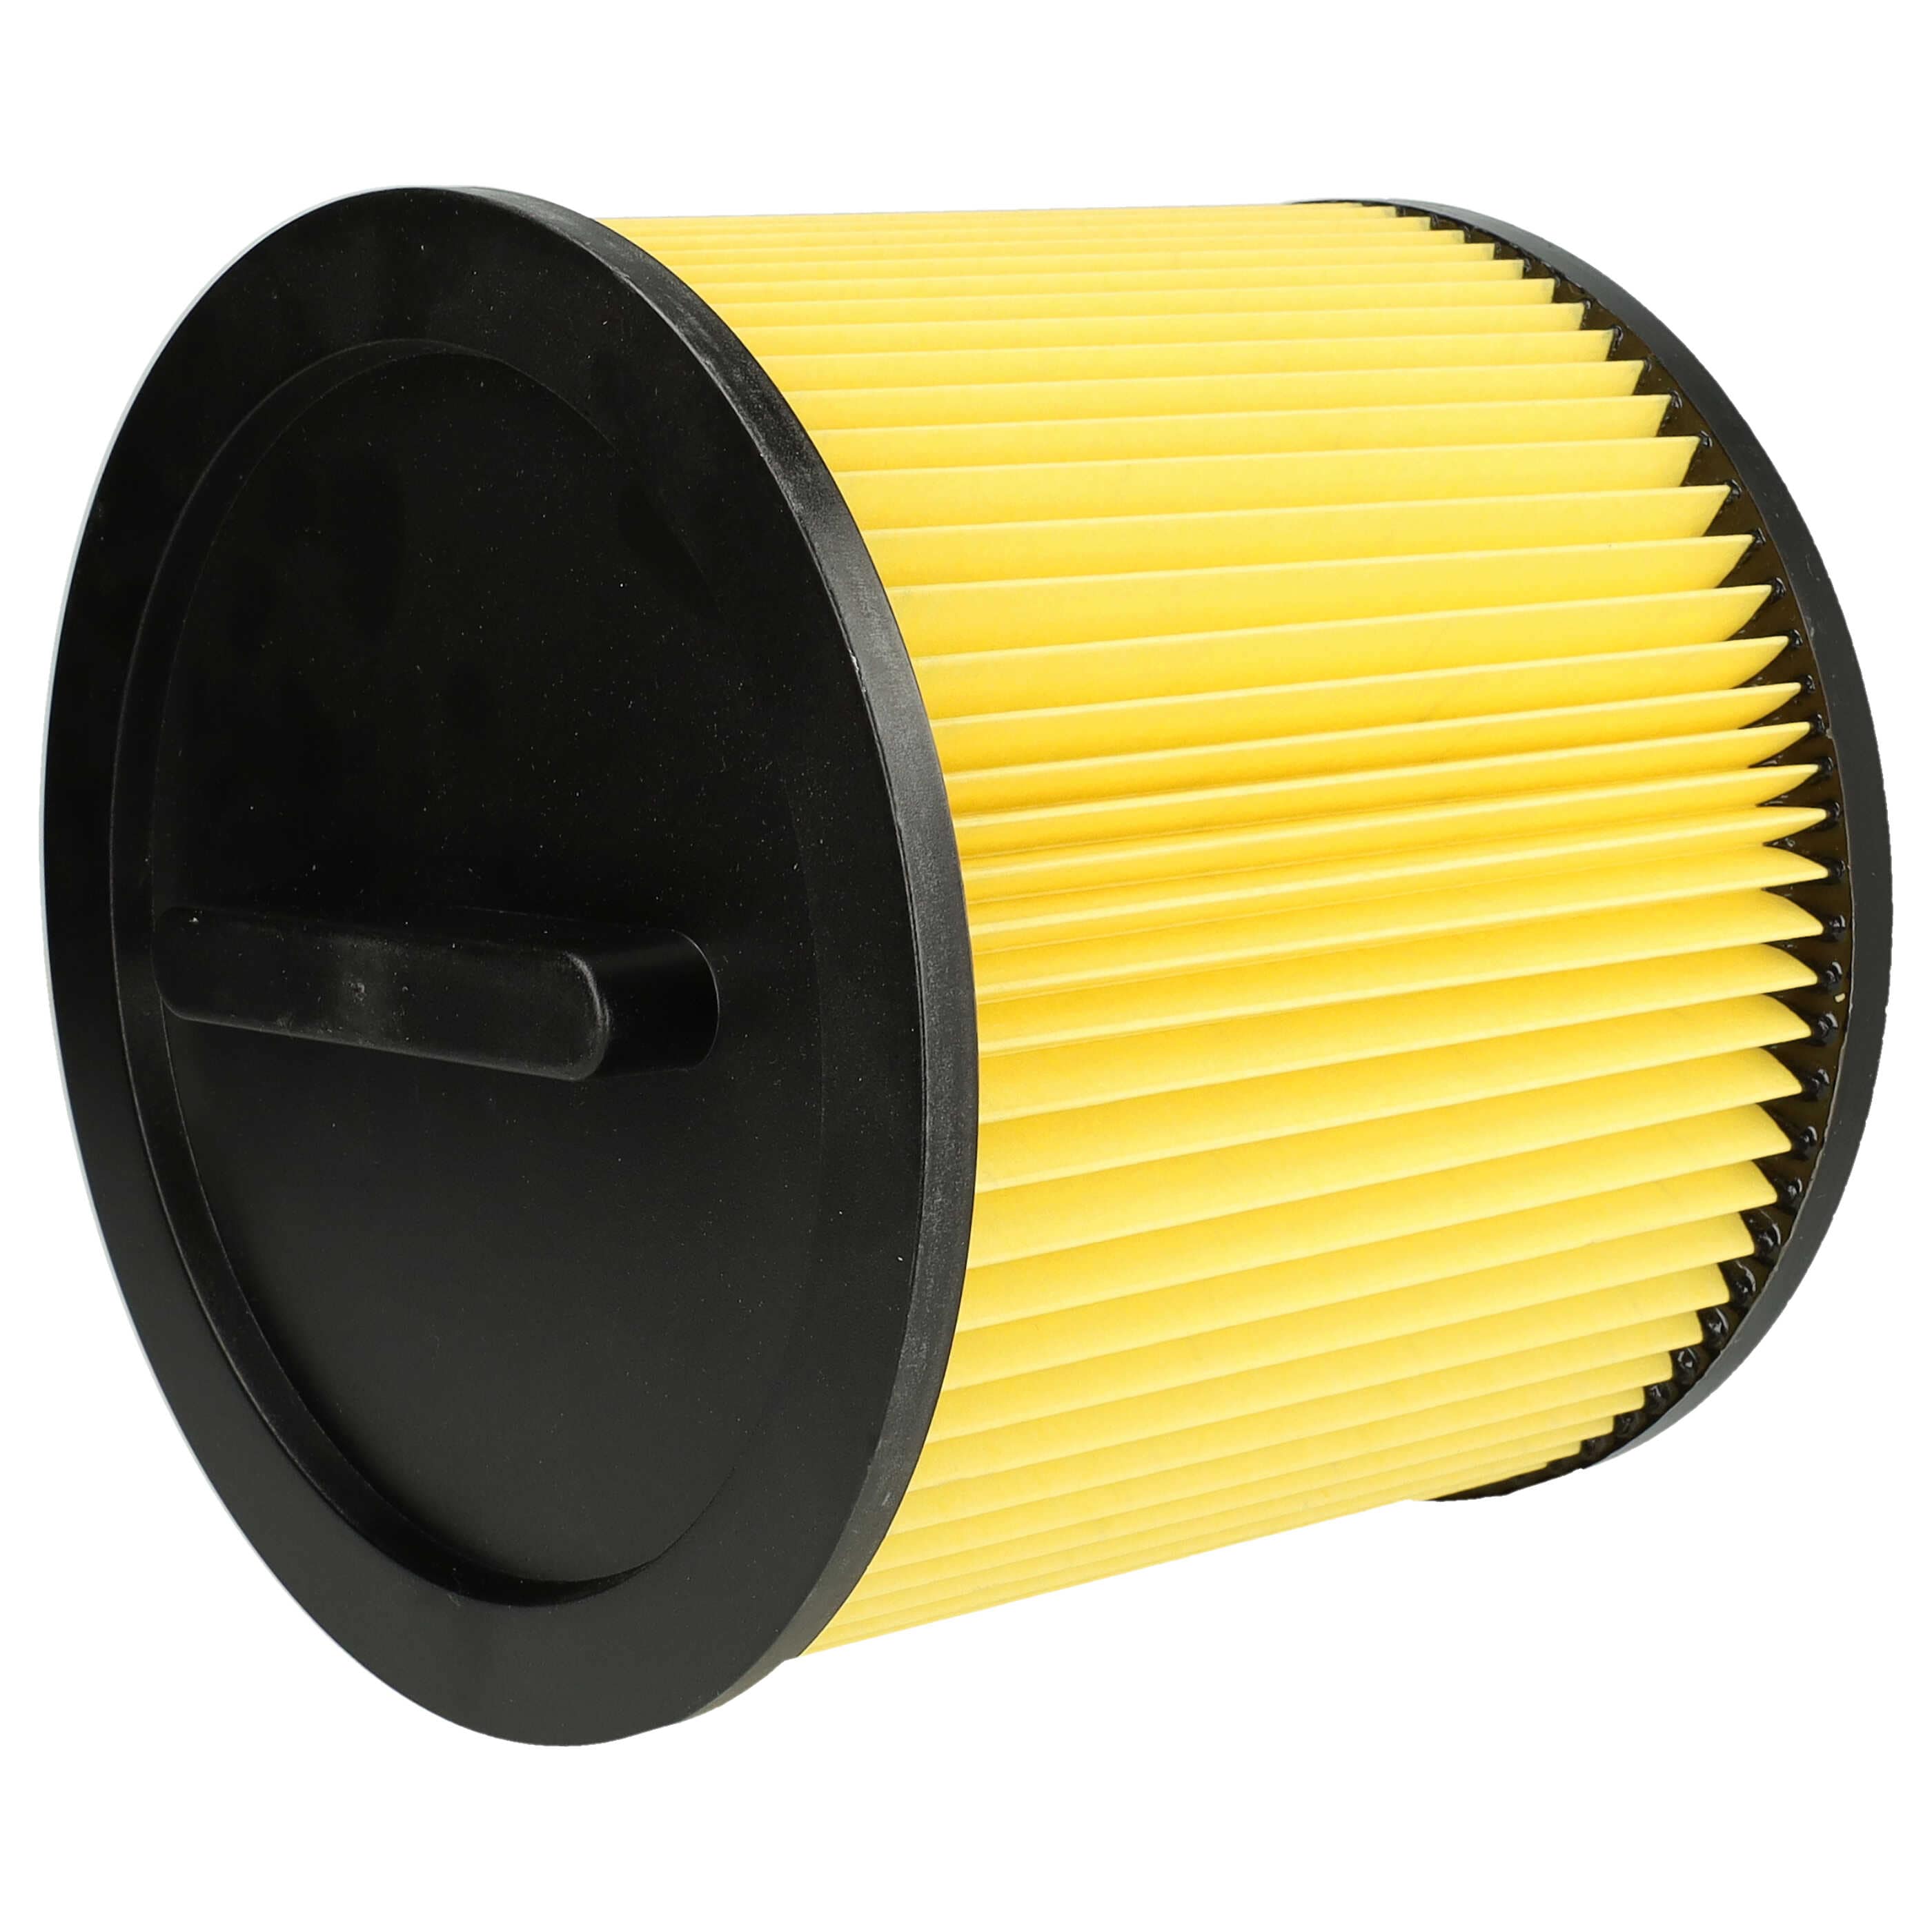 Filtr do odkurzacza Thomas zamiennik Einhell 2351113 - wkład filtracyjny, czarny / żółty